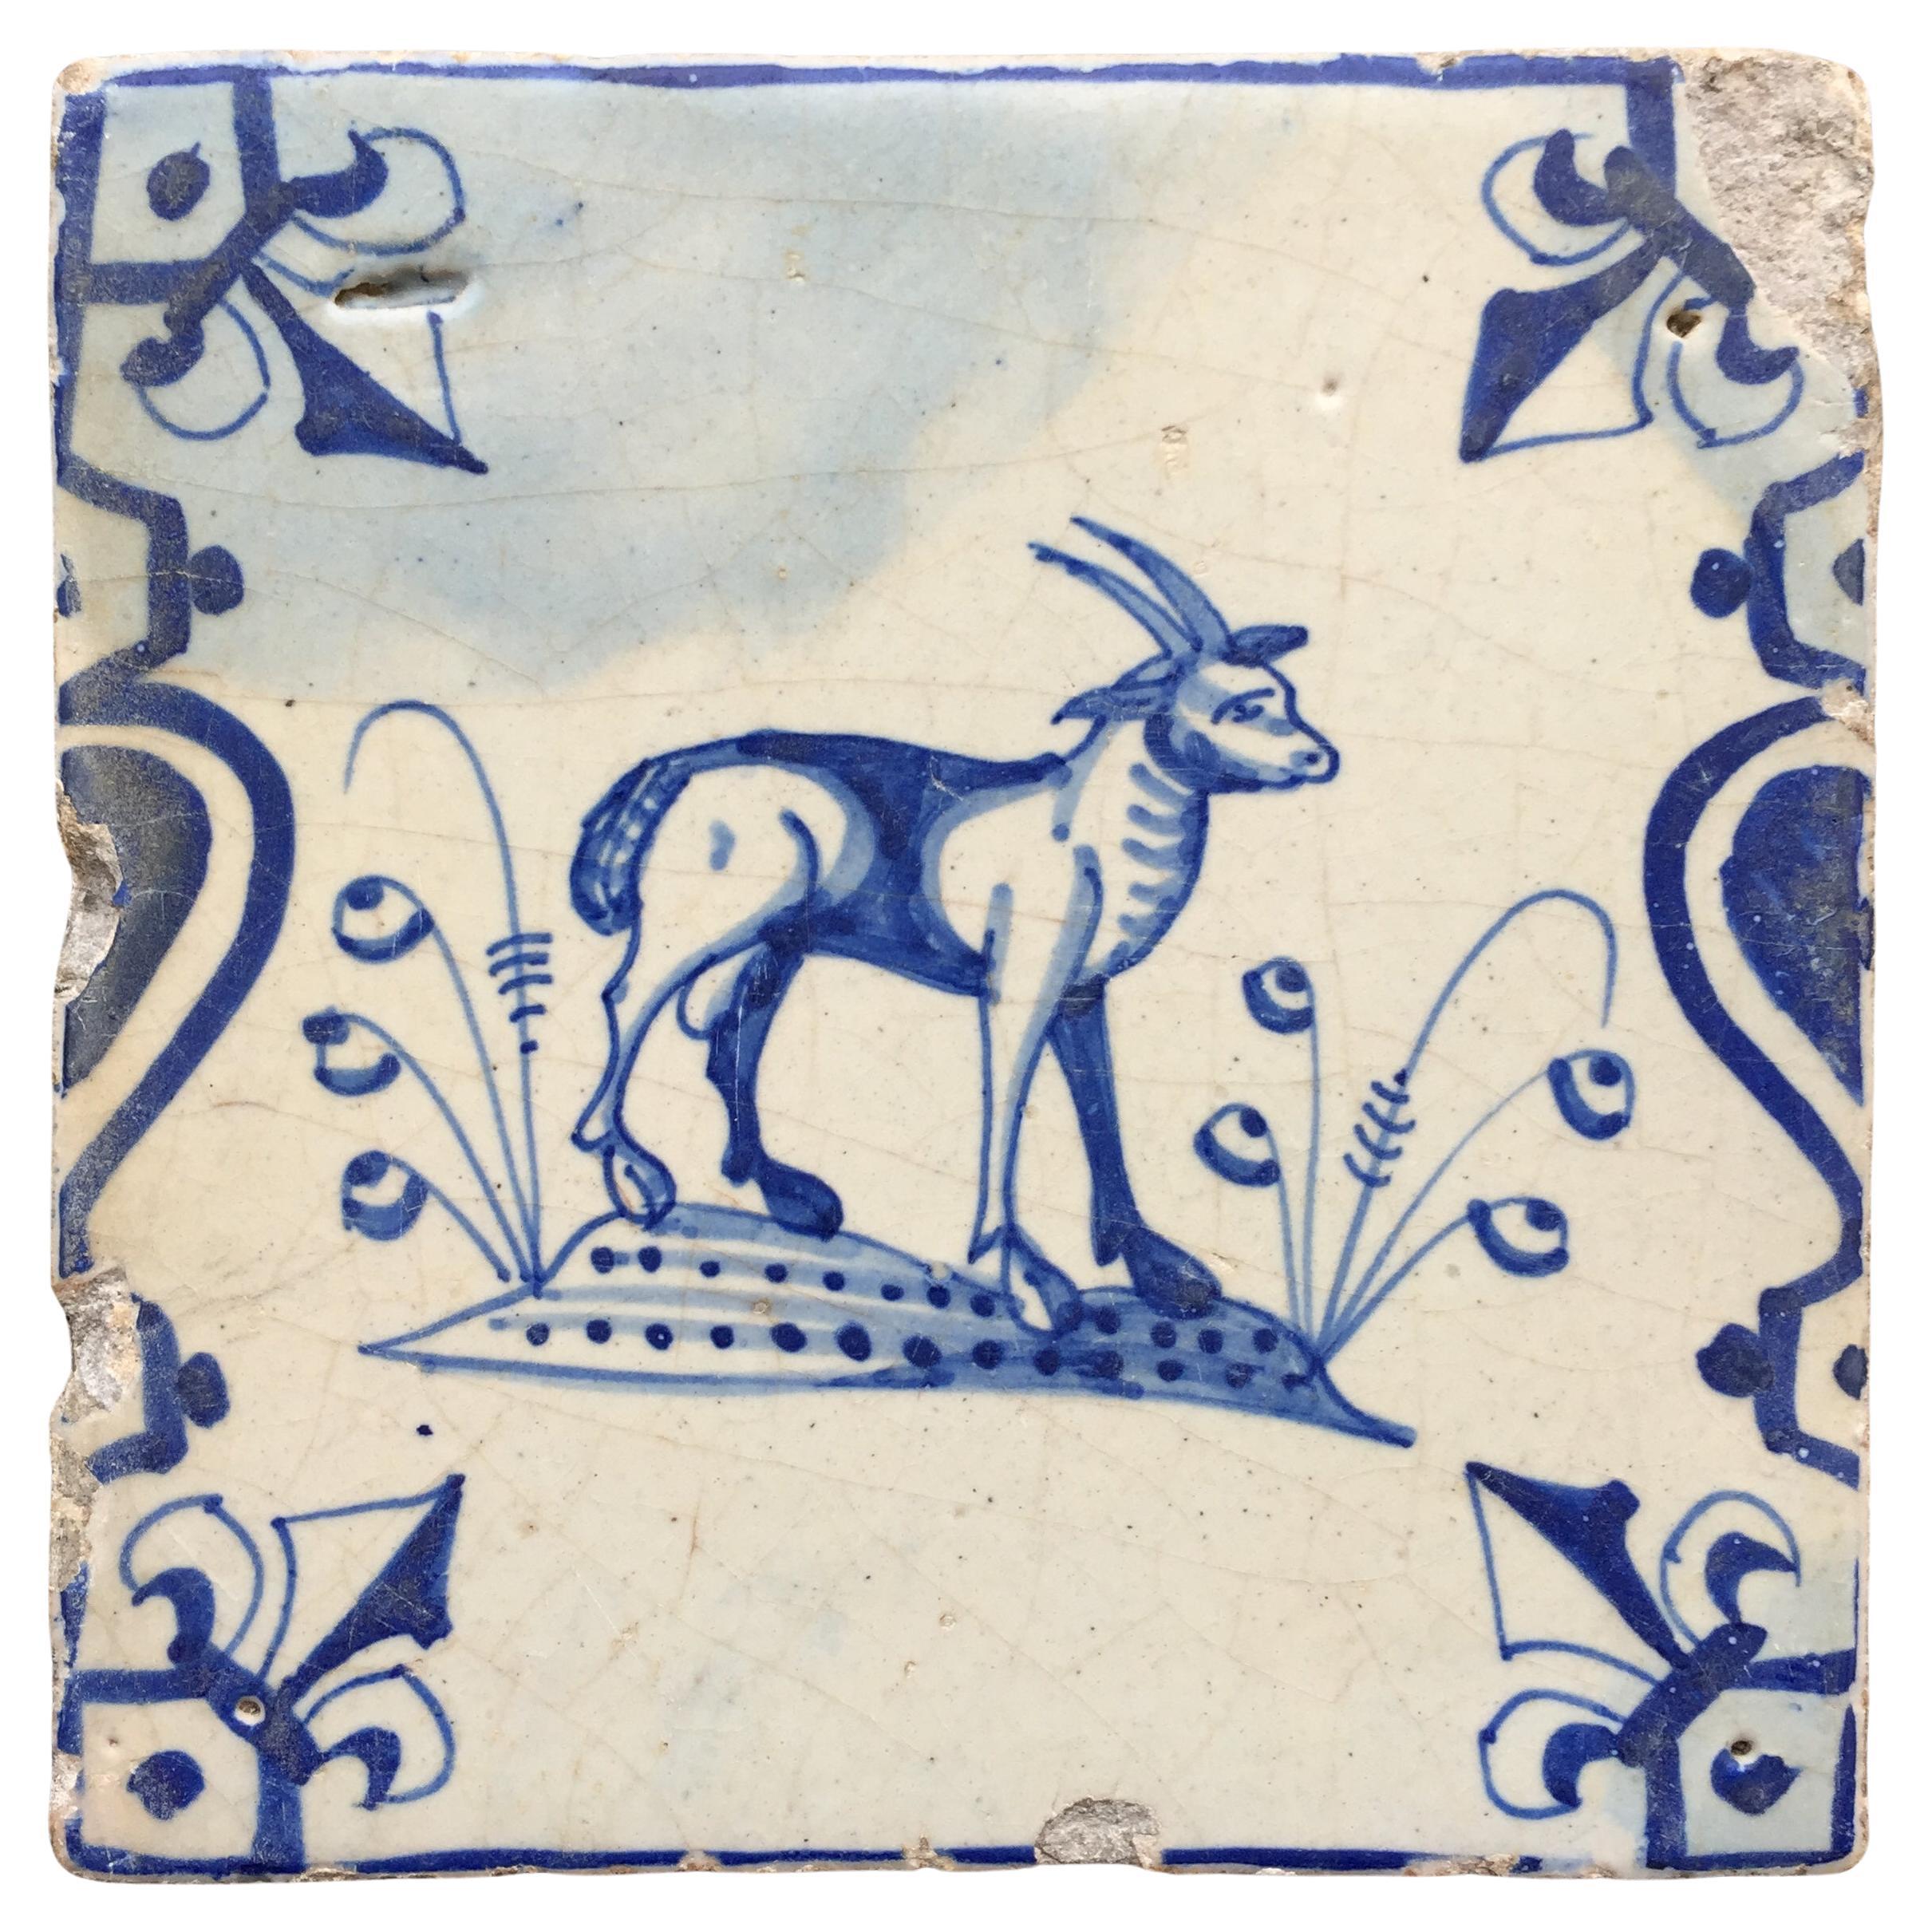 Niederländische Delft Fliese des 17. Jahrhunderts mit Dekoration einer Ziege